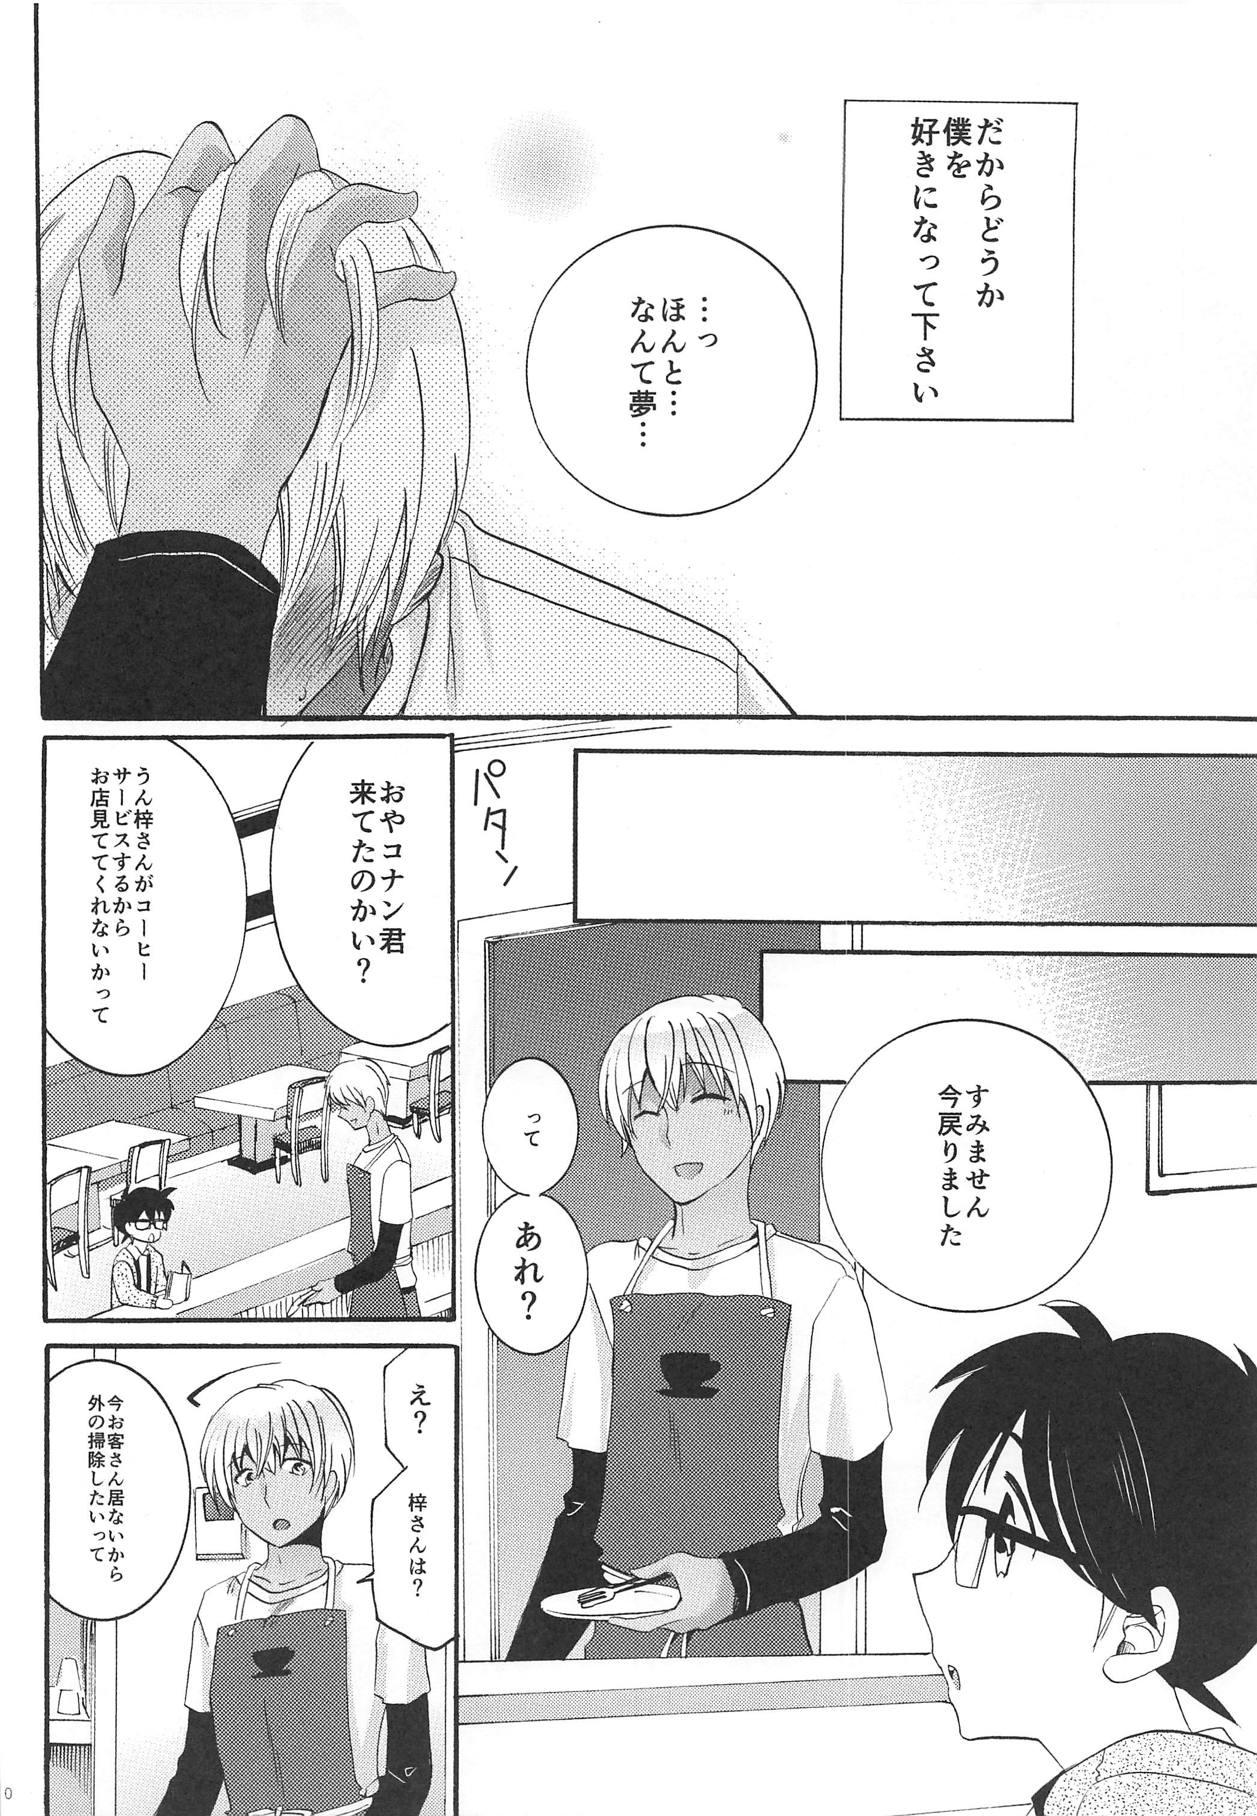 Boots Yume no Naka de Kimi o Kegasu - Detective conan Strip - Page 9